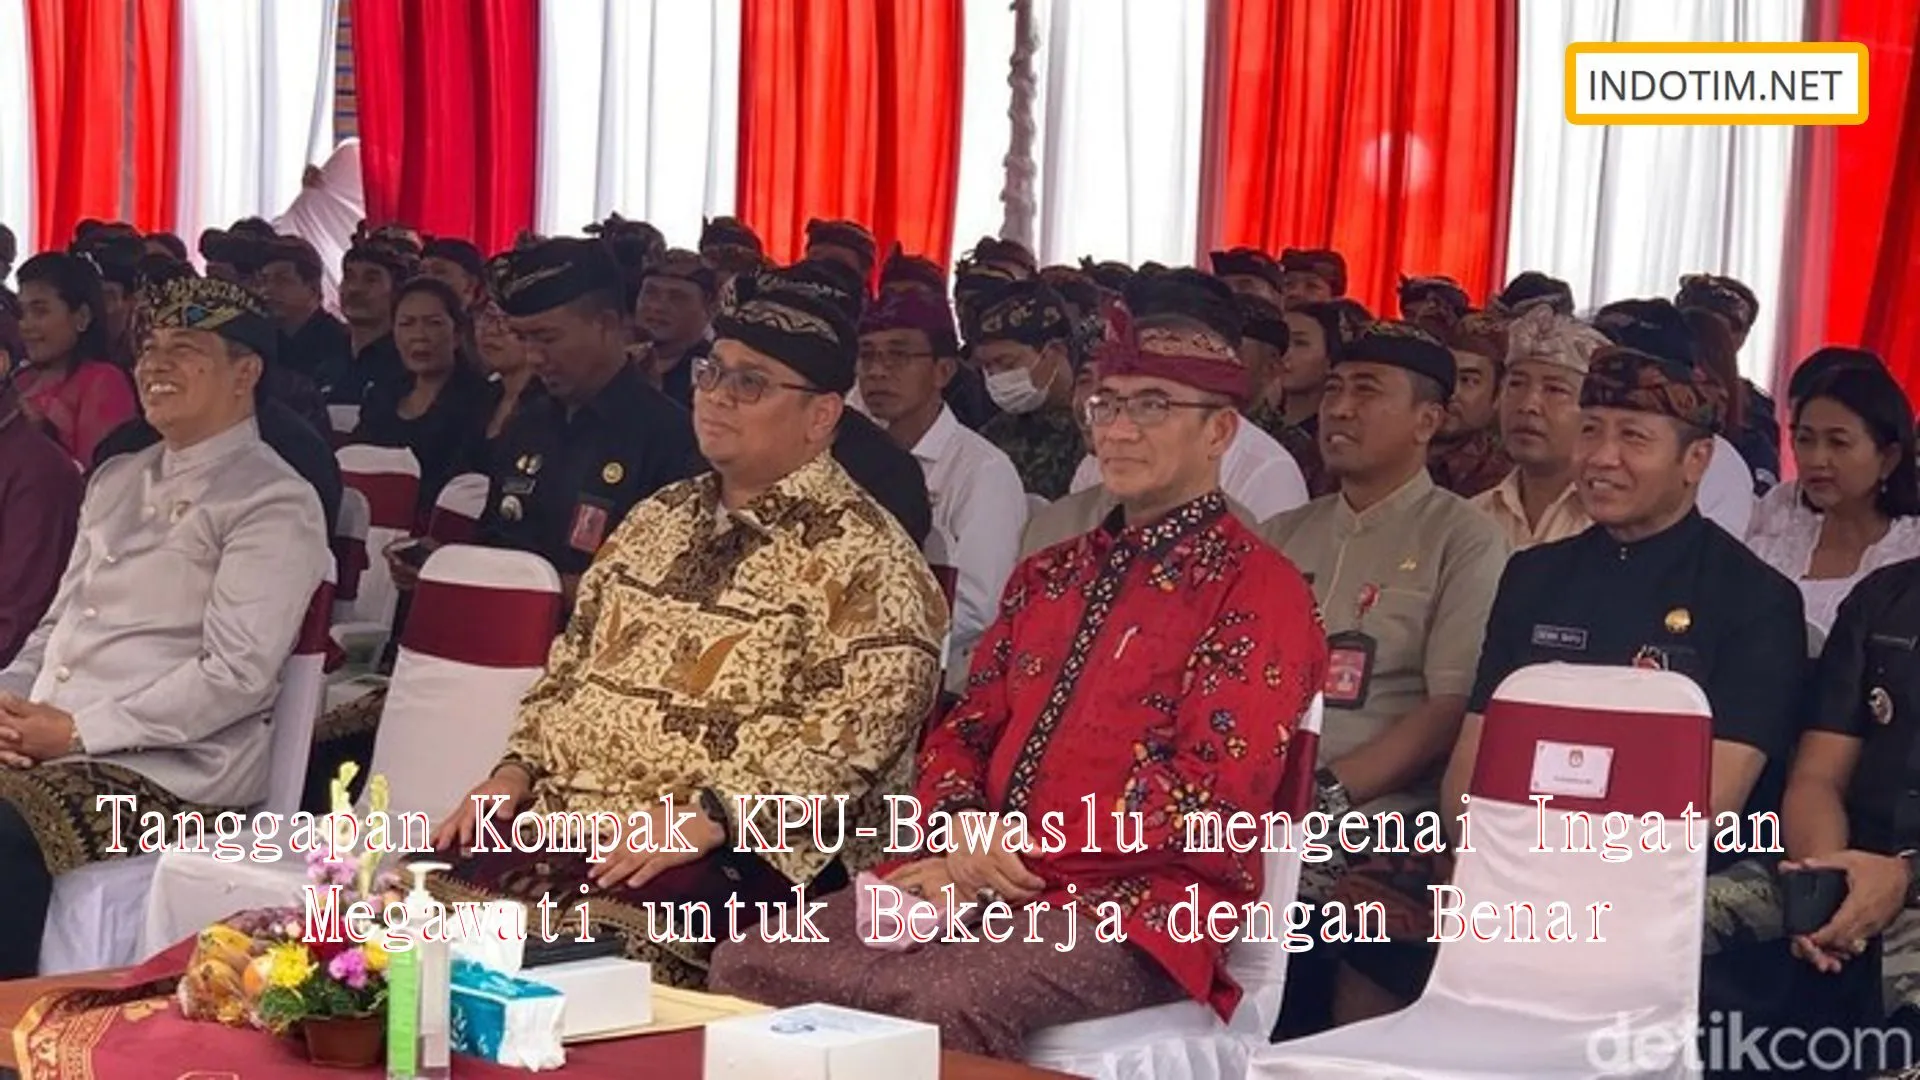 Tanggapan Kompak KPU-Bawaslu mengenai Ingatan Megawati untuk Bekerja dengan Benar